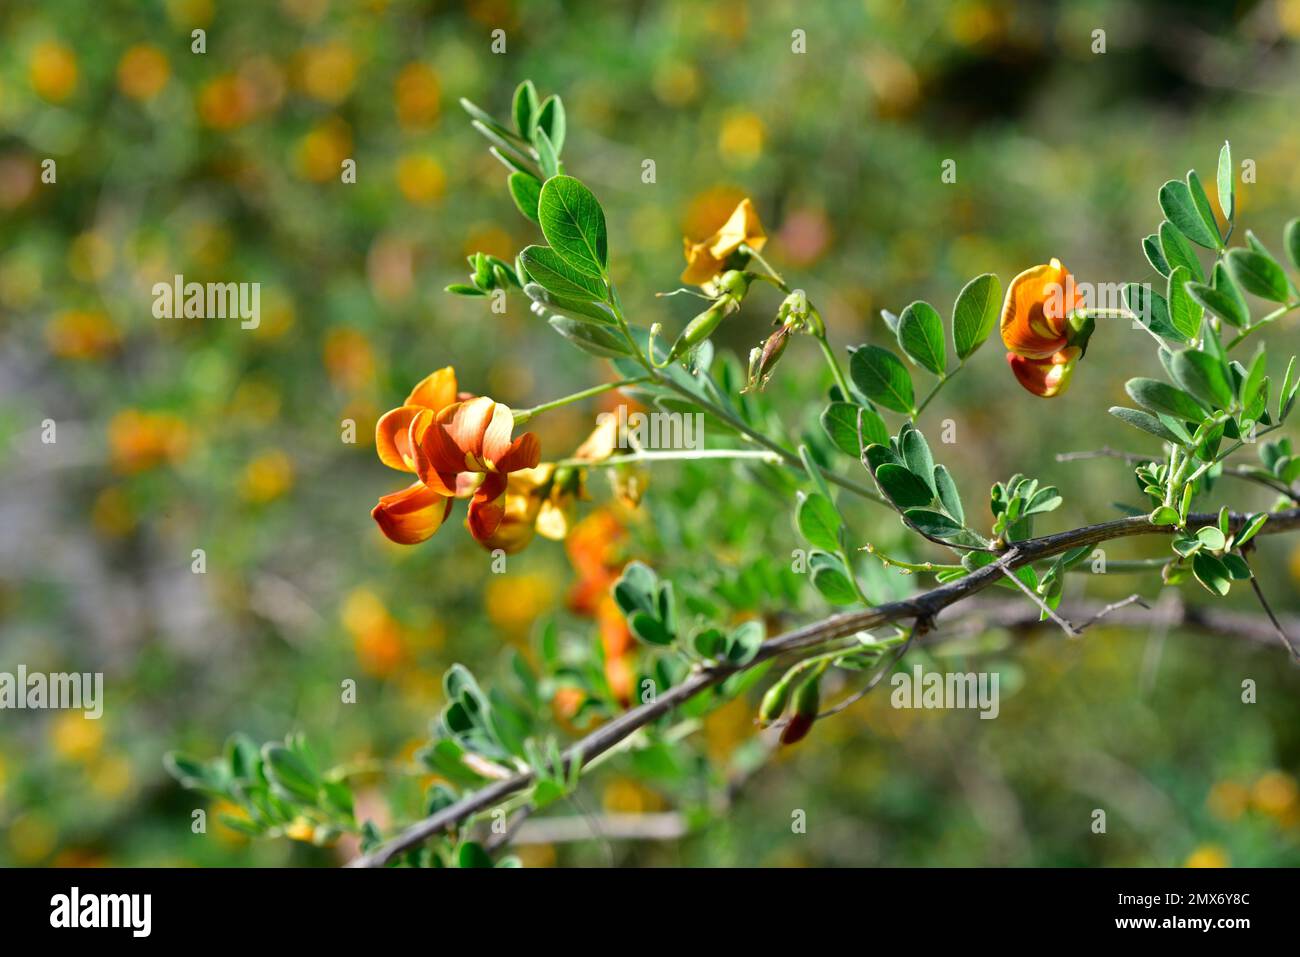 Blase-senna (Colutea orientalis) ist ein in Osteuropa einheimischer Milchstrauch. Details zu Blumen und unreifen Früchten. Stockfoto